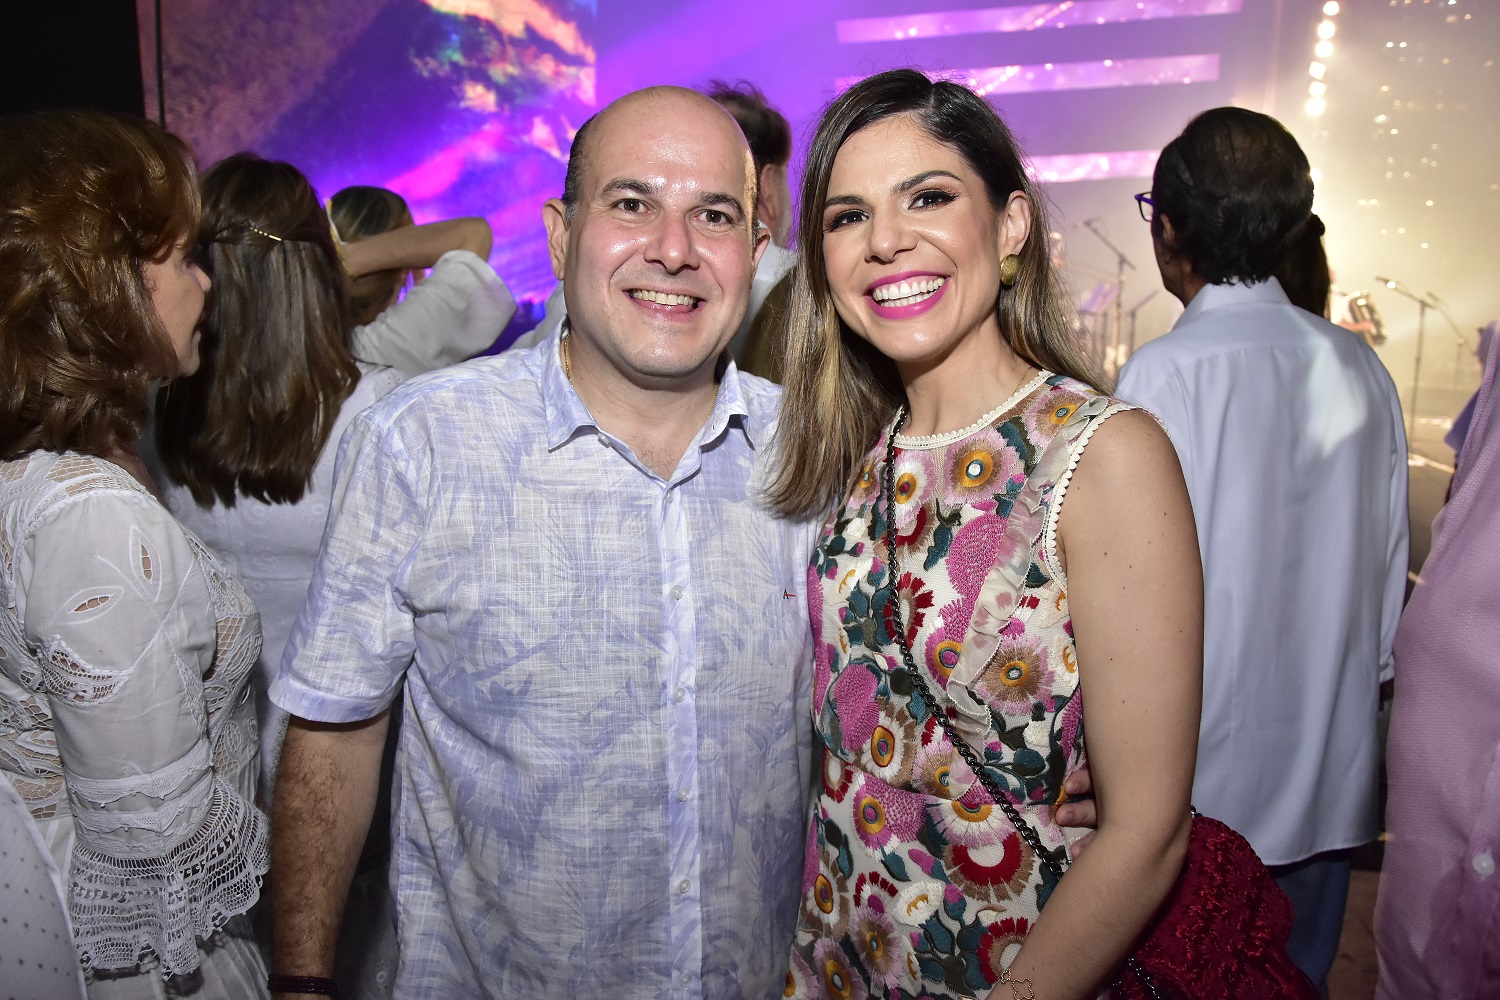 Réveillon de Fortaleza 2020 recebe 1 milhão de pessoas em grande festa; confira fotos